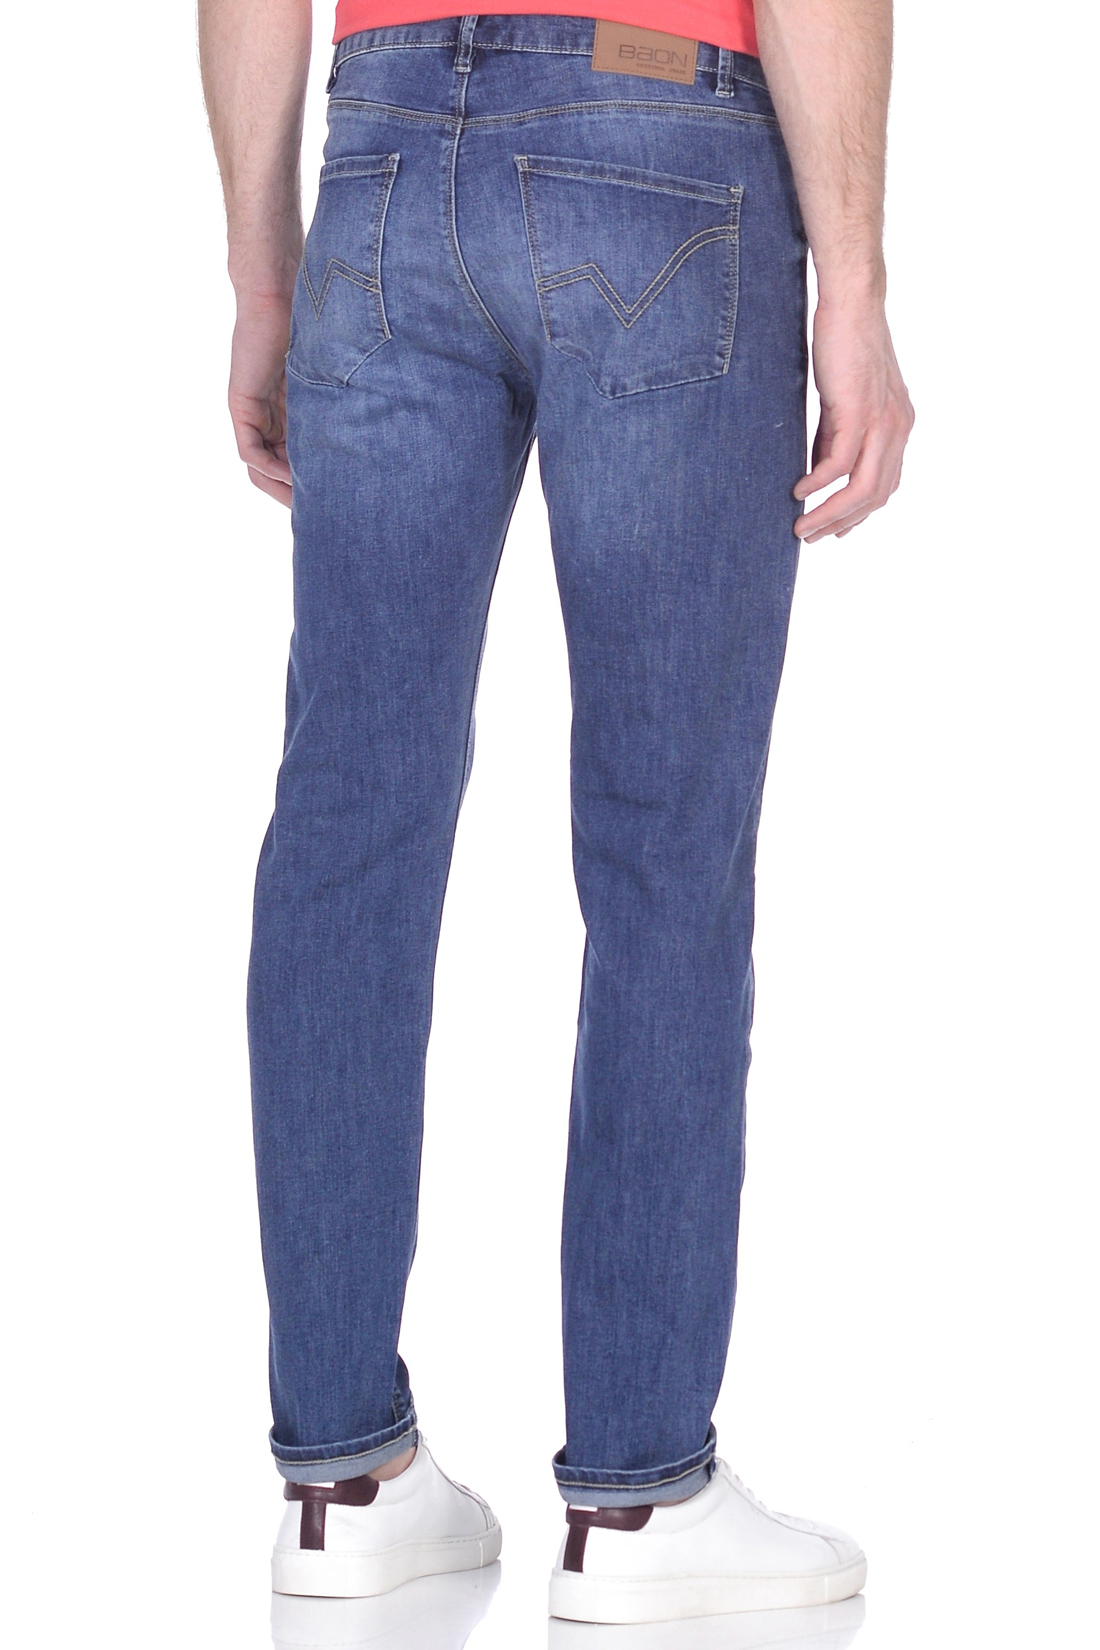 Зауженные джинсы с потёртостями (арт. baon B809006), размер 36, цвет blue denim#голубой Зауженные джинсы с потёртостями (арт. baon B809006) - фото 3